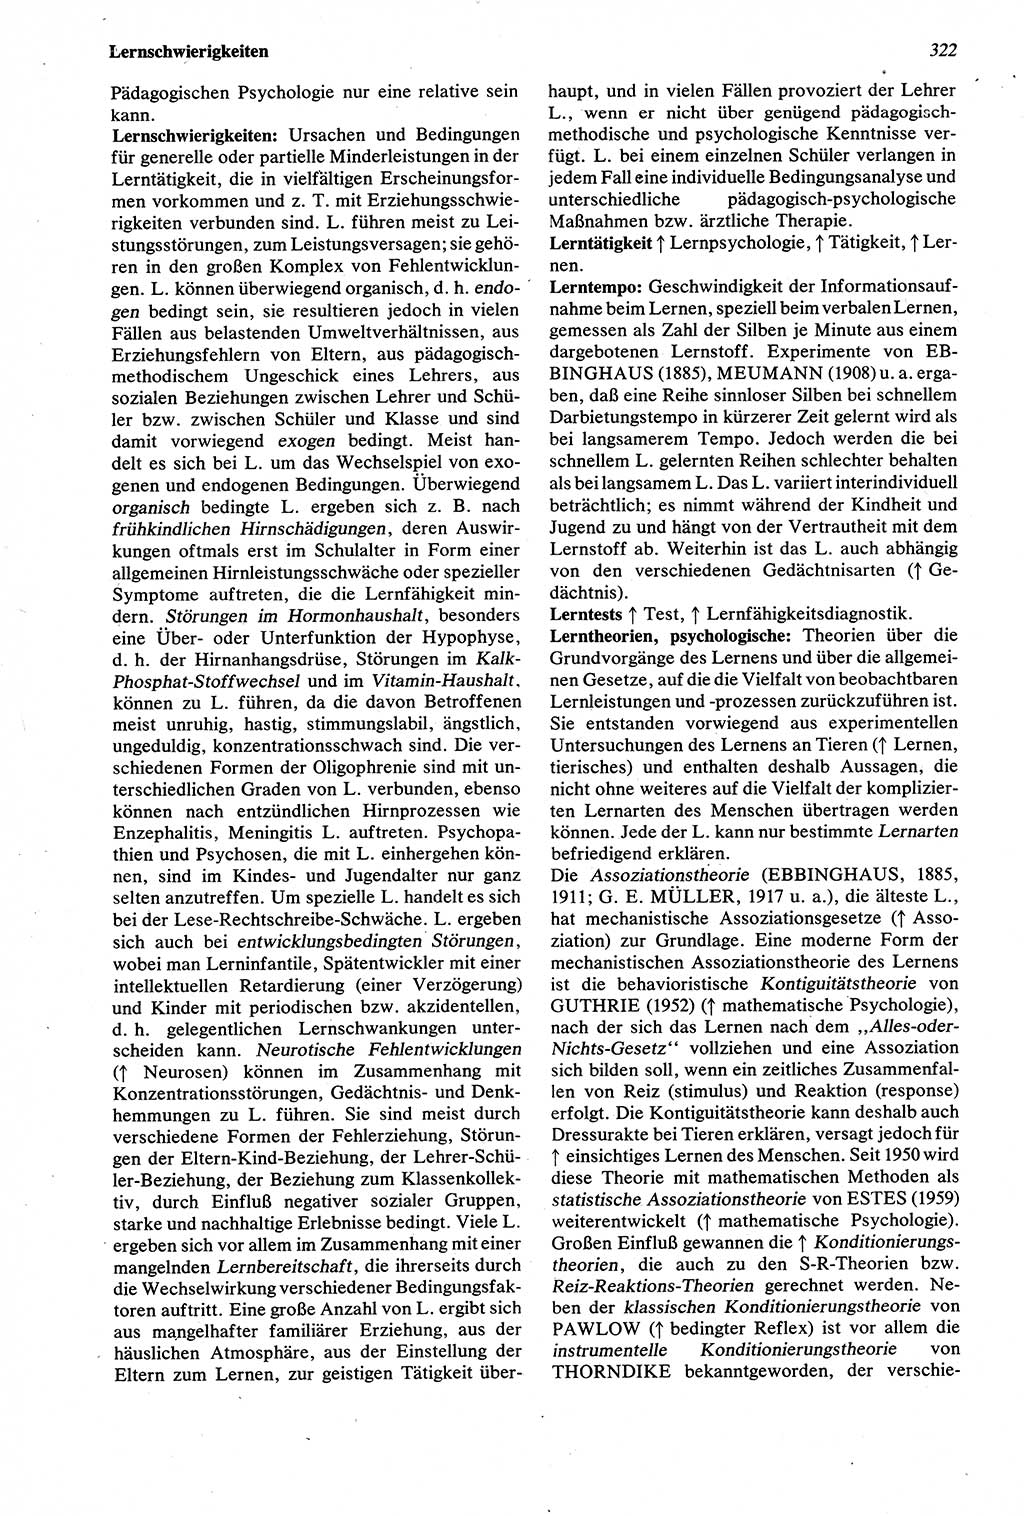 Wörterbuch der Psychologie [Deutsche Demokratische Republik (DDR)] 1976, Seite 322 (Wb. Psych. DDR 1976, S. 322)